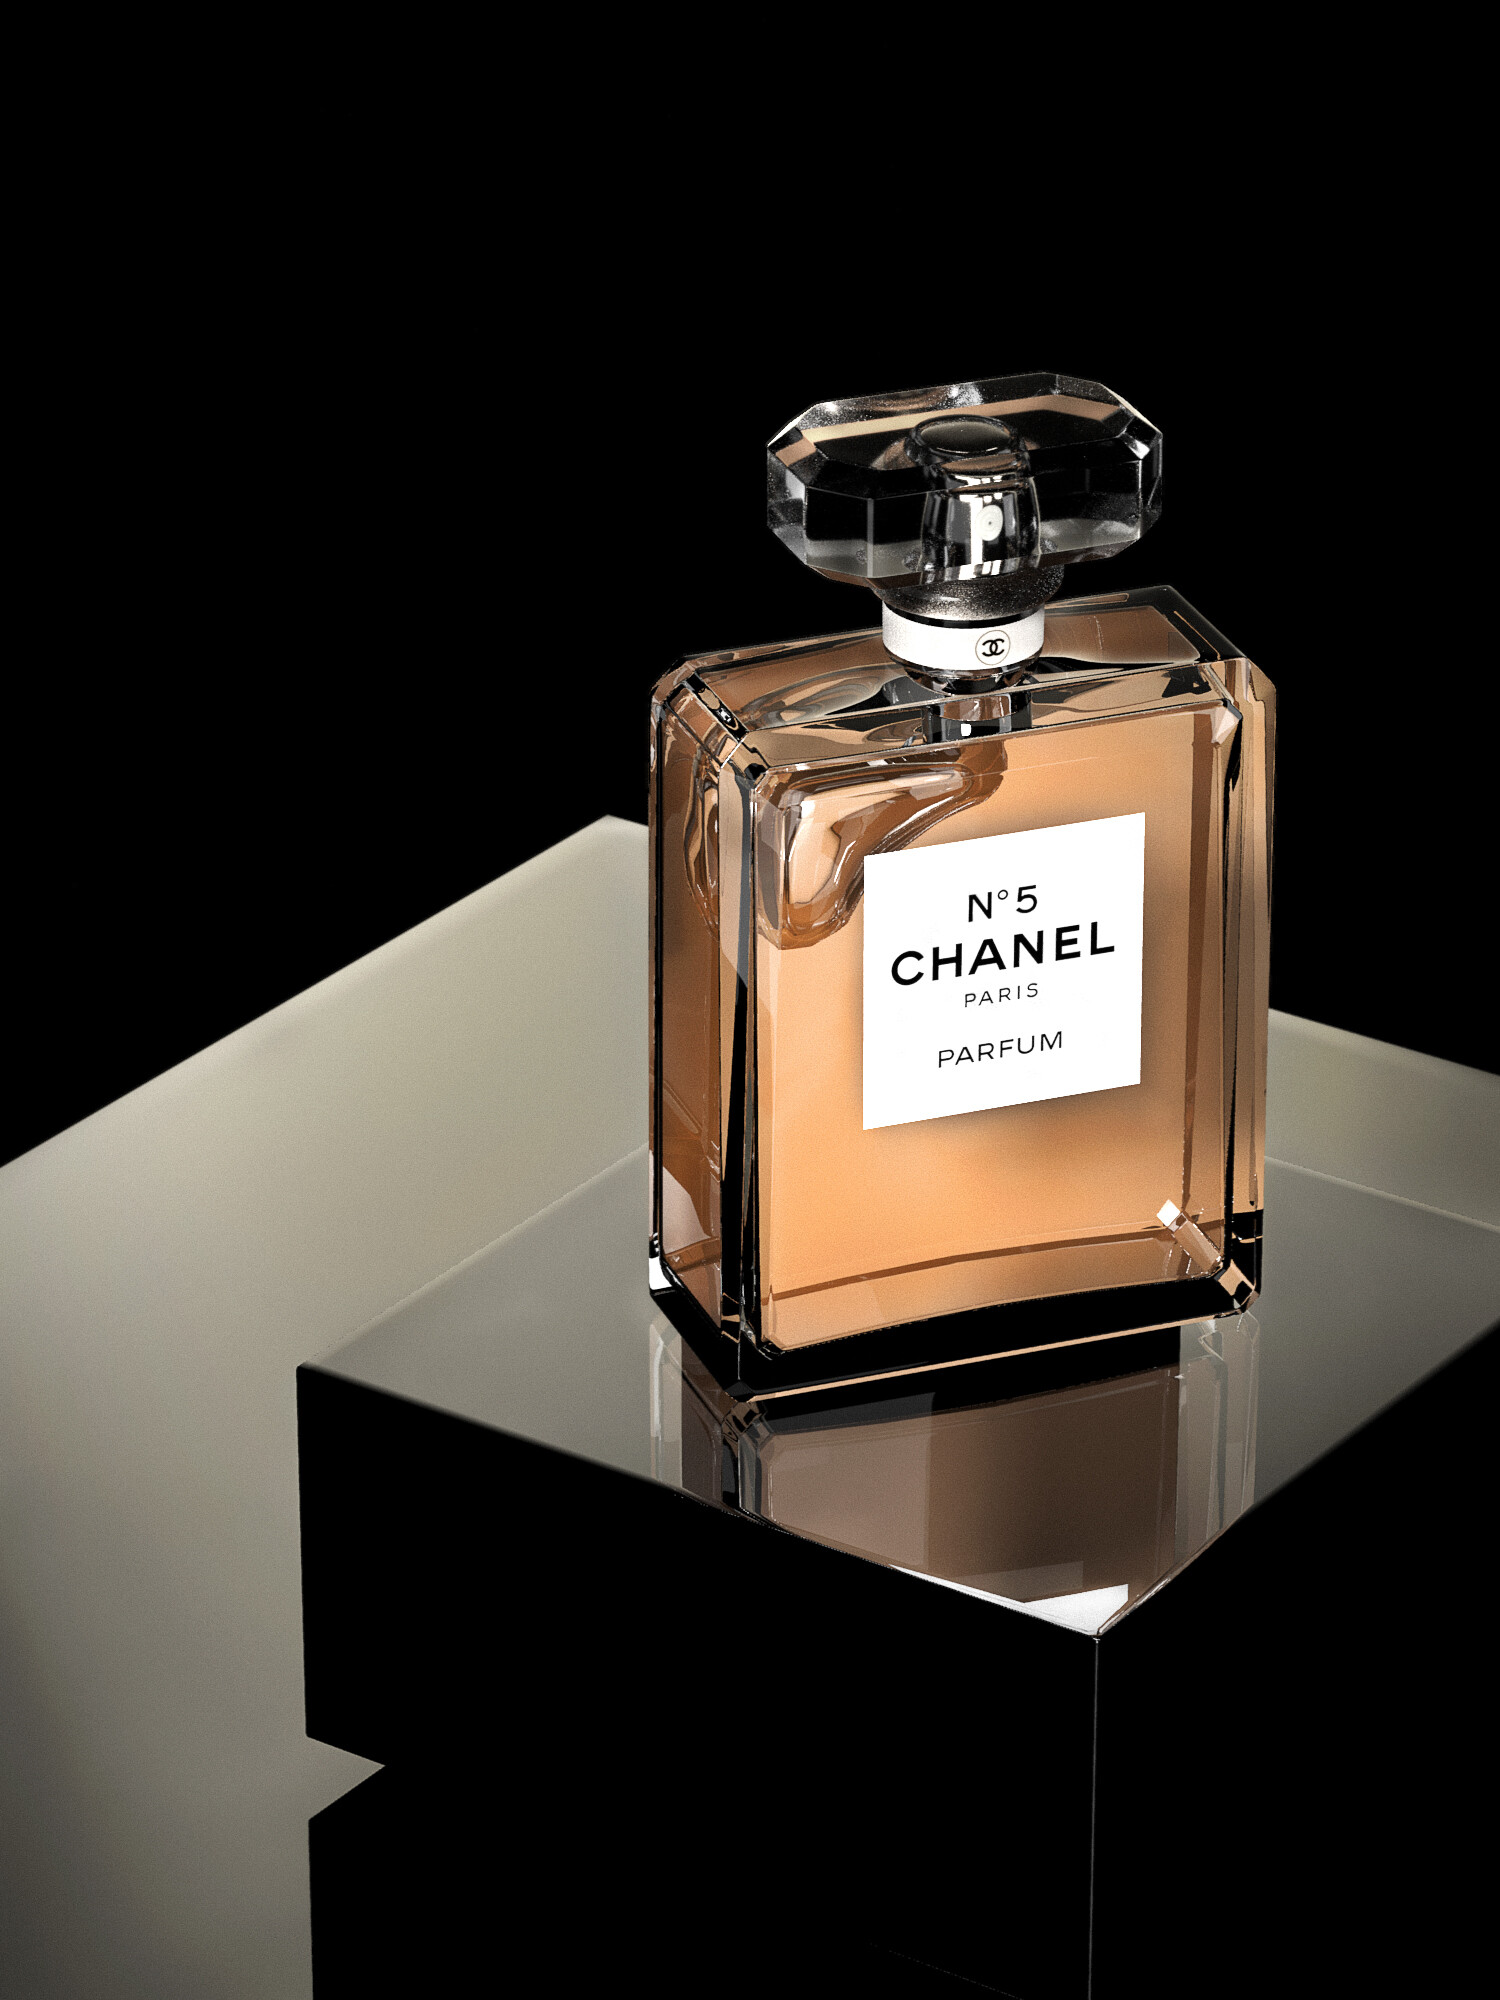 ArtStation - Bleu De Chanel - Eau De Parfum - Poster Design